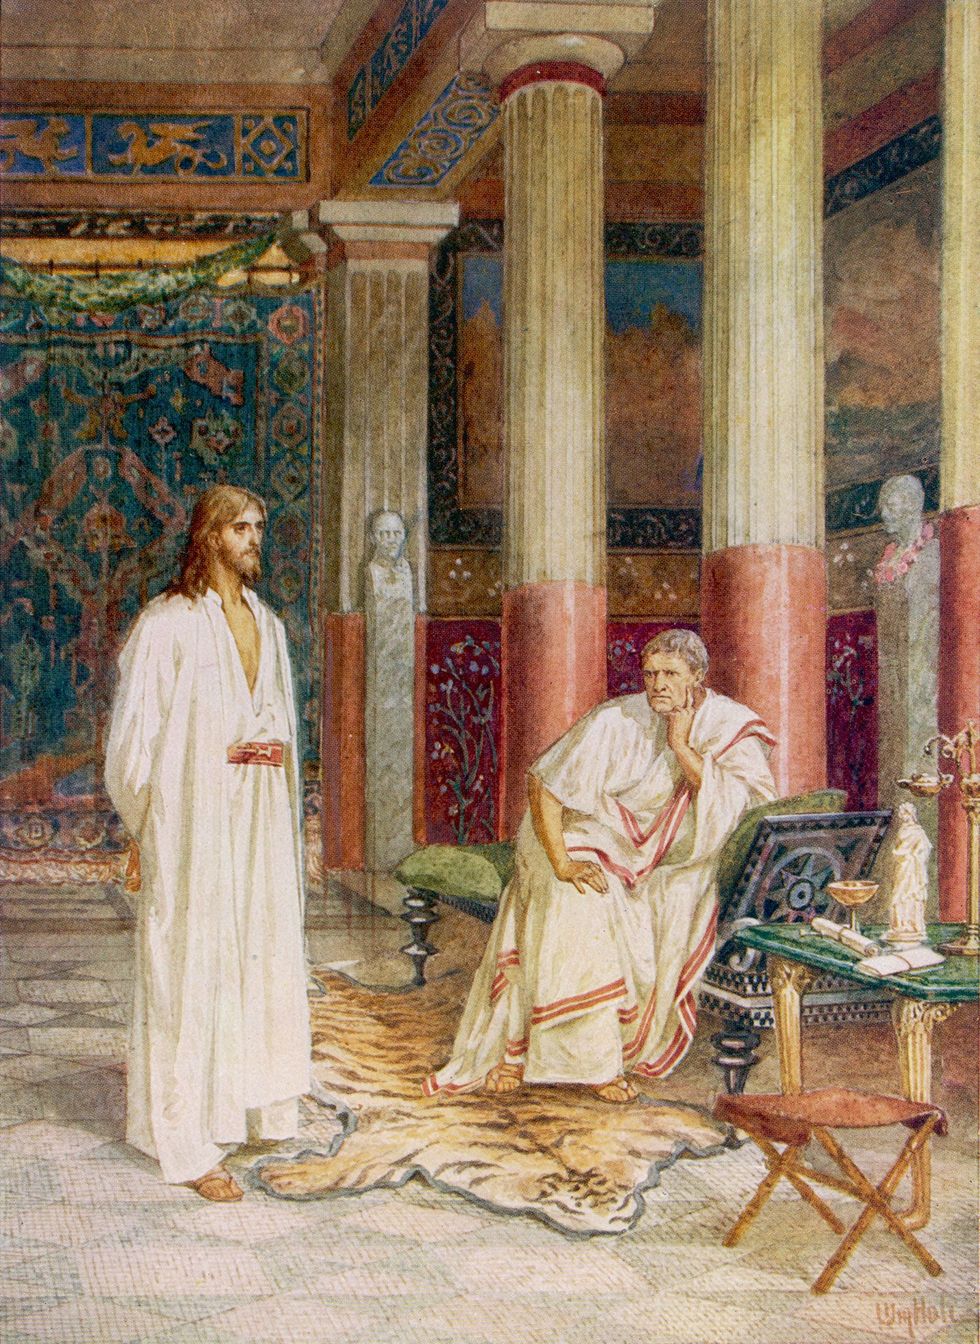 De Romeinse prefect Pontius Pilatus ondervroeg Jezus en gaf bevel tot zijn executie volgens het christelijke evangelie